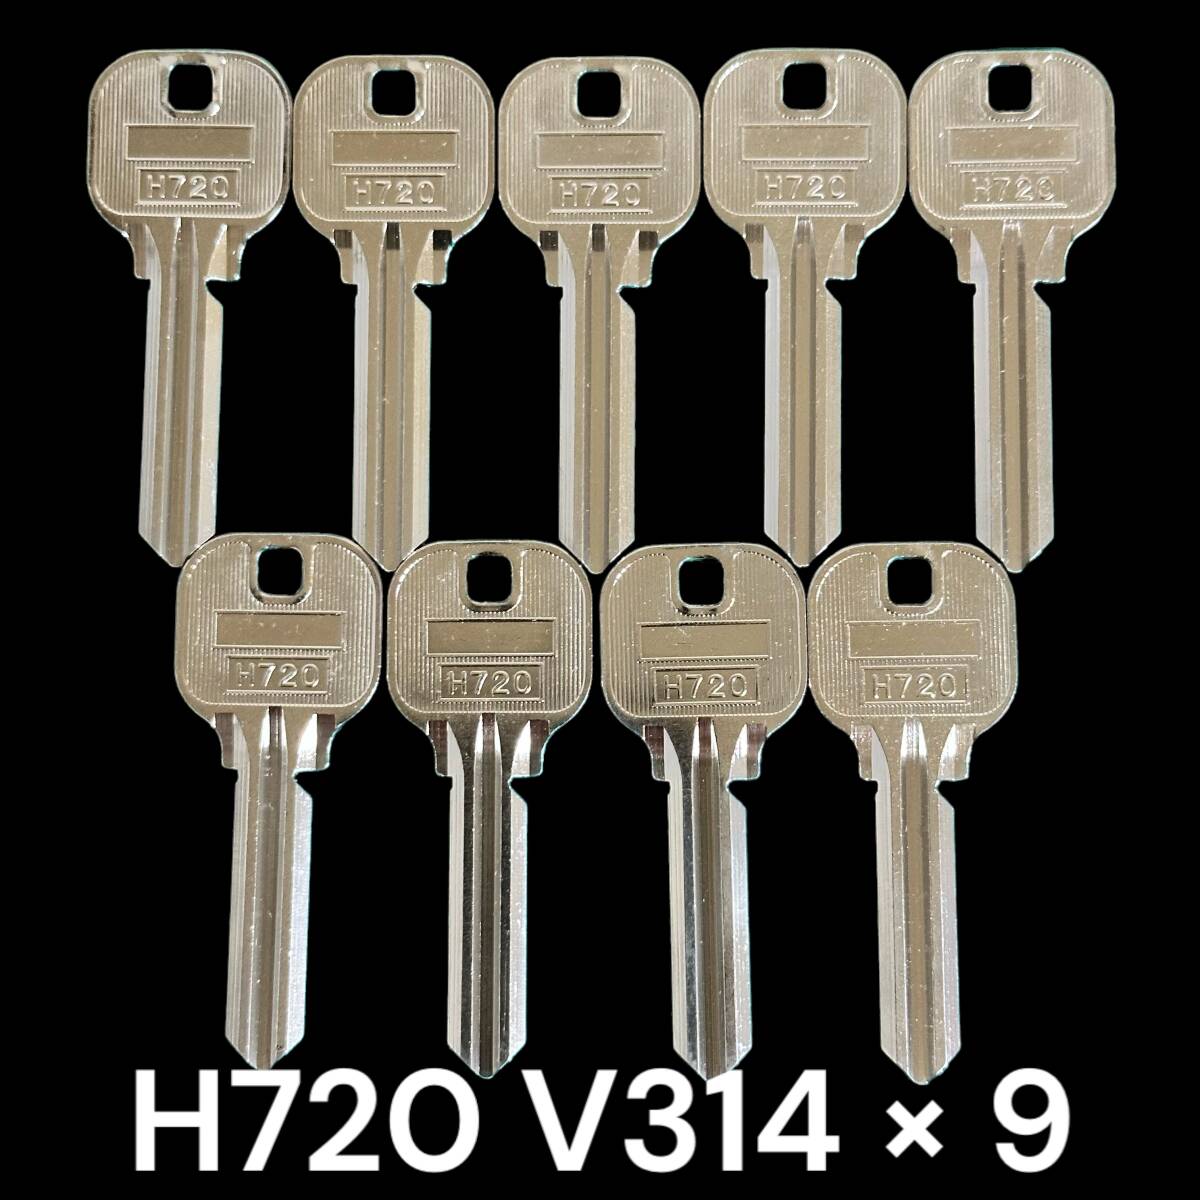 T472 ブランクキー H720 THL M314 9本 合鍵 スペアキー カギ かぎ _画像1